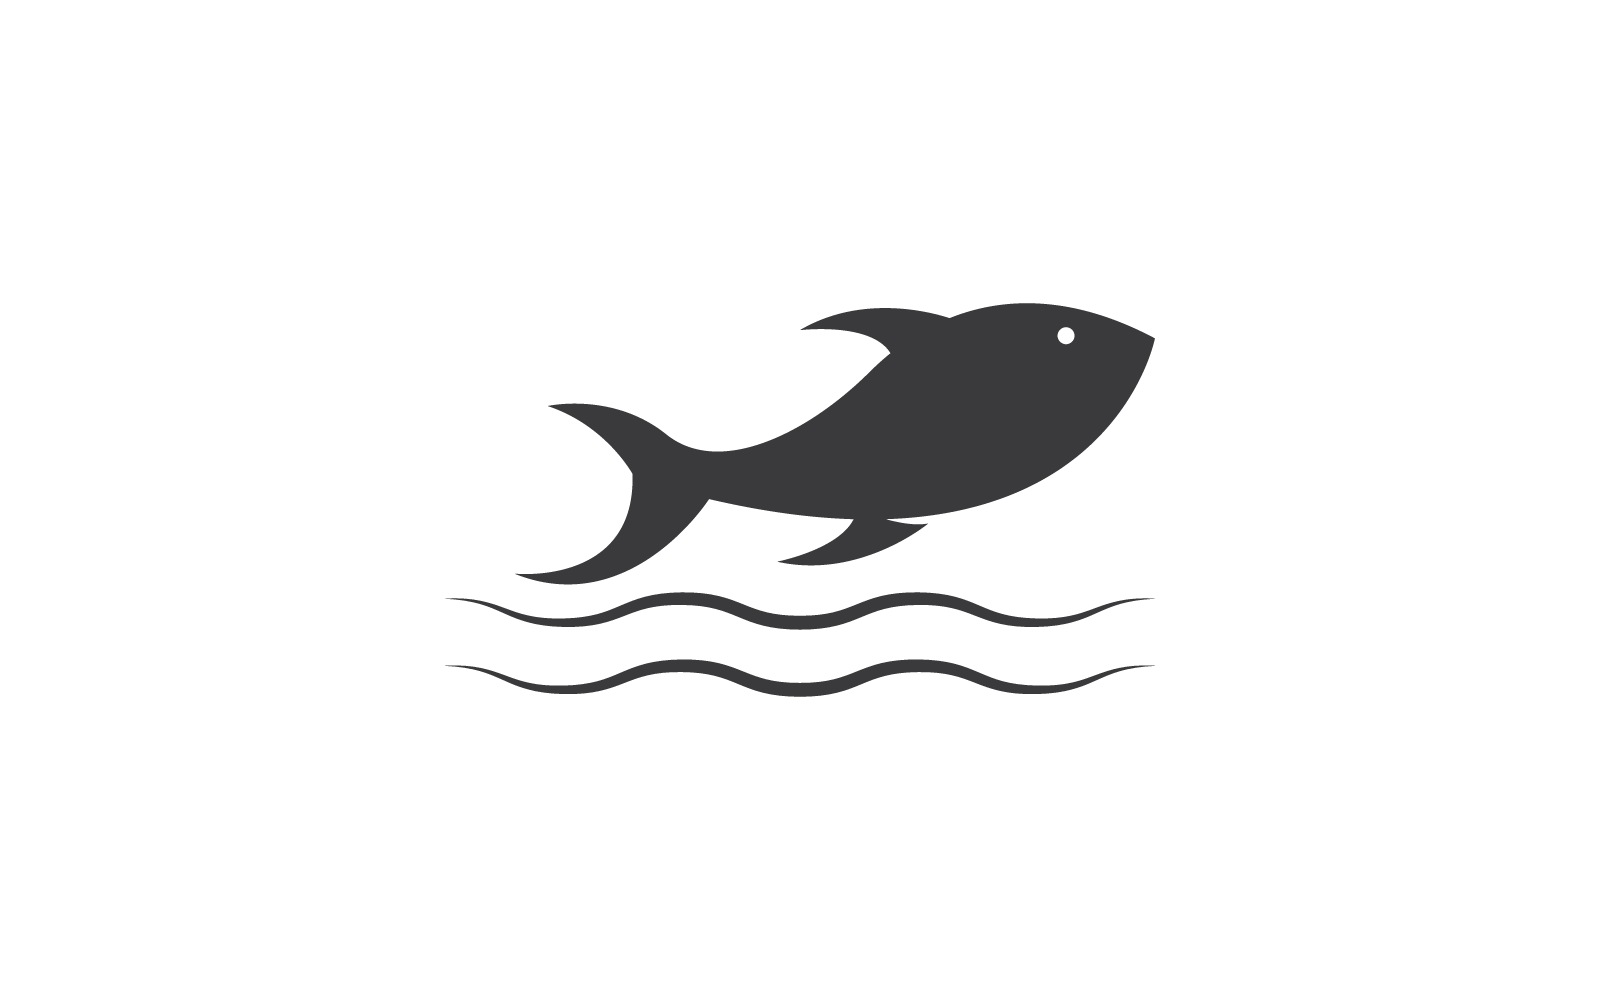 Риба логотип ілюстрація дизайн значок вектор шаблон